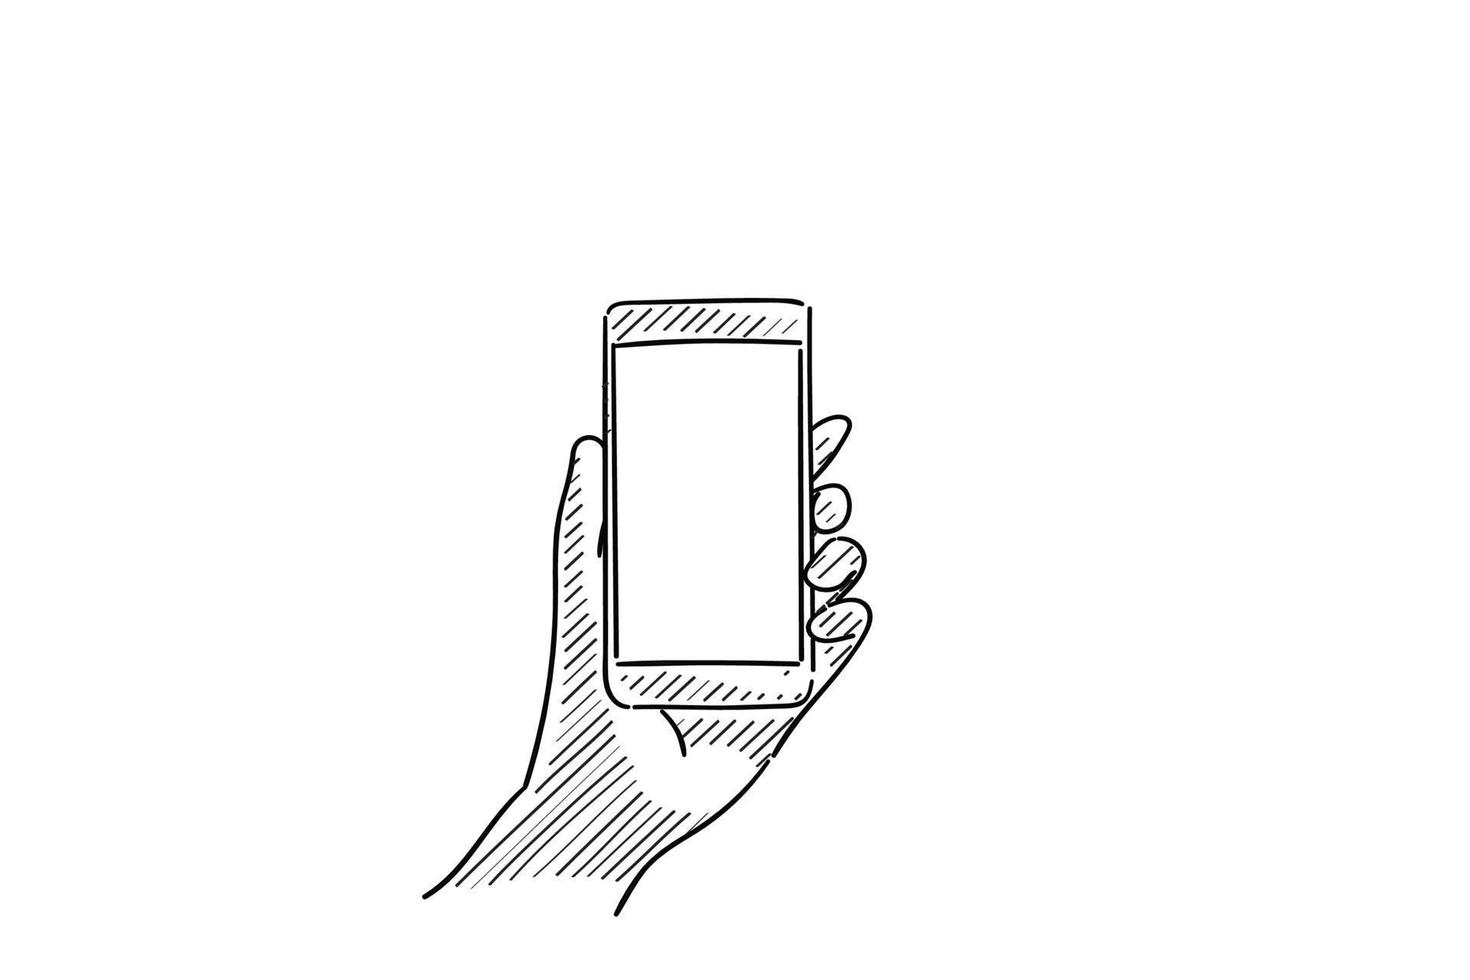 mano sinistra utilizzando il telefono cellulare, mostrando lo schermo vuoto per copyspace - illustrazione vettoriale schizzo disegnato a mano con linee nere, isolato su sfondo bianco